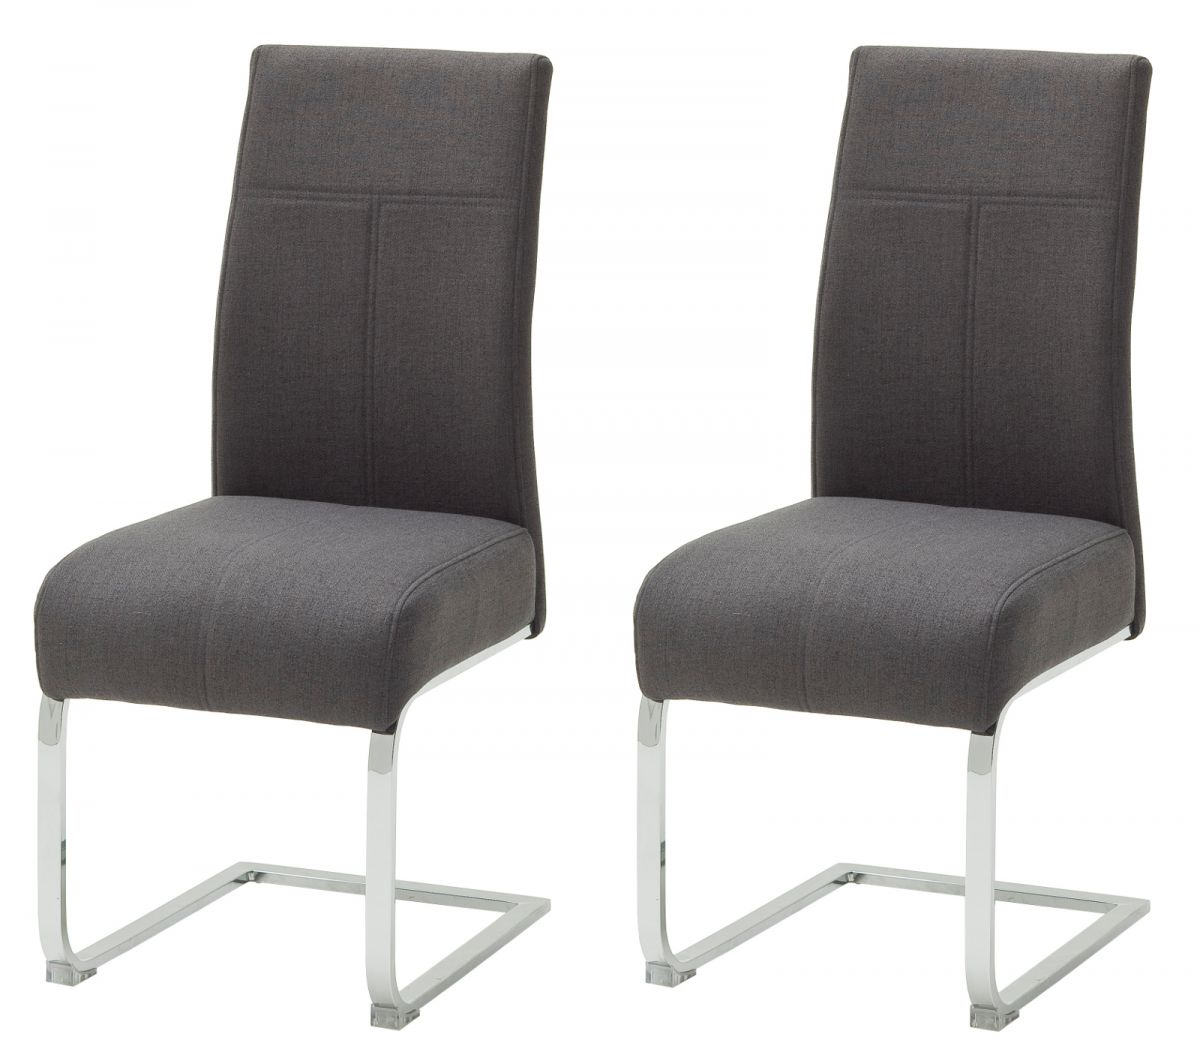 2 x Stuhl Foshan in anthrazit Freischwinger mit Komfortsitzhhe und Aqua Resistant Stoffbezug Esszimmerstuhl 2er Set